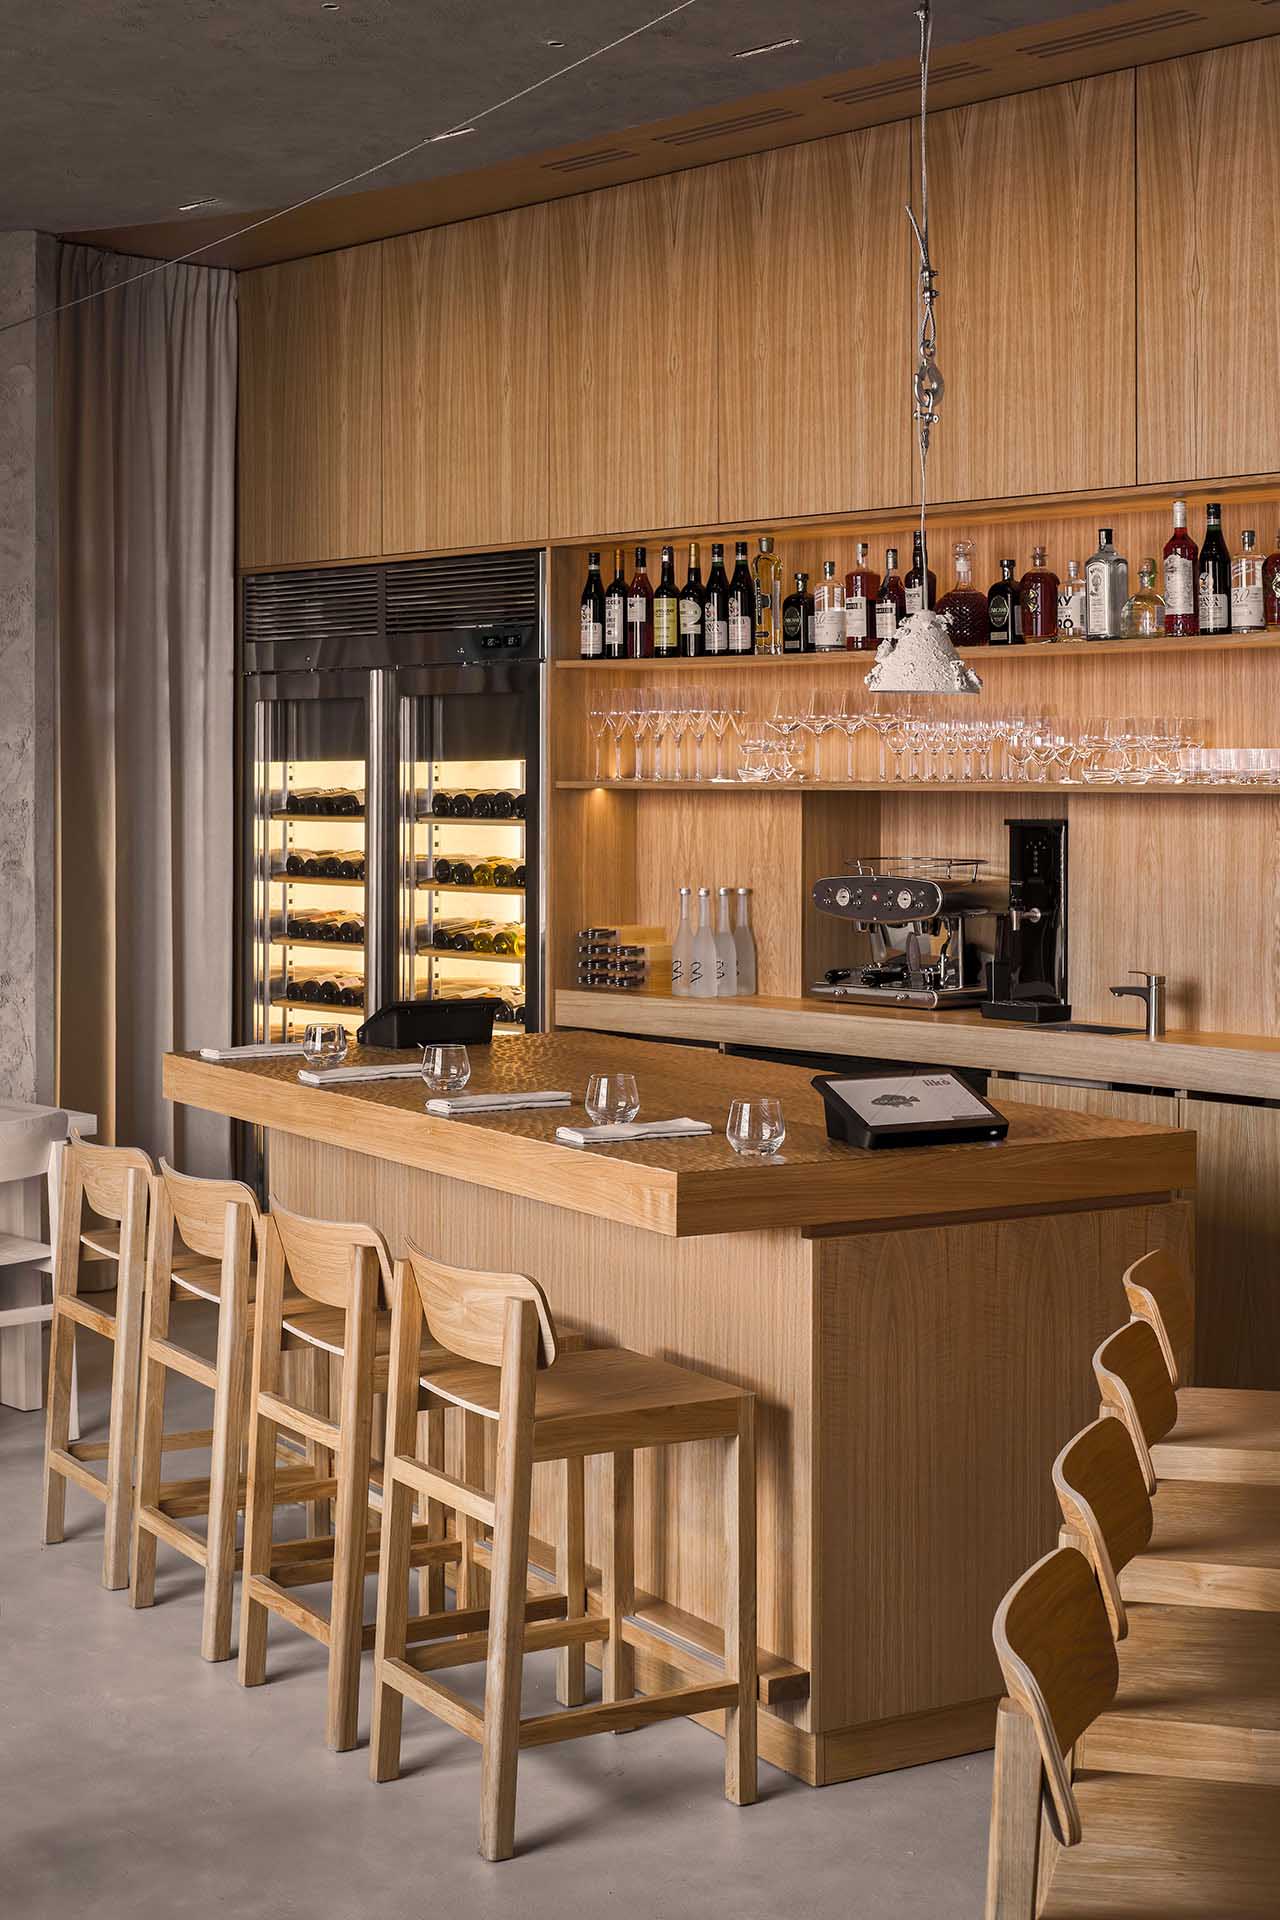 海鲜餐厅设计,餐厅设计案例,原木色,酒吧设计方案,DA bureau,圣彼得堡,极简主义,Porto 19海鲜餐厅